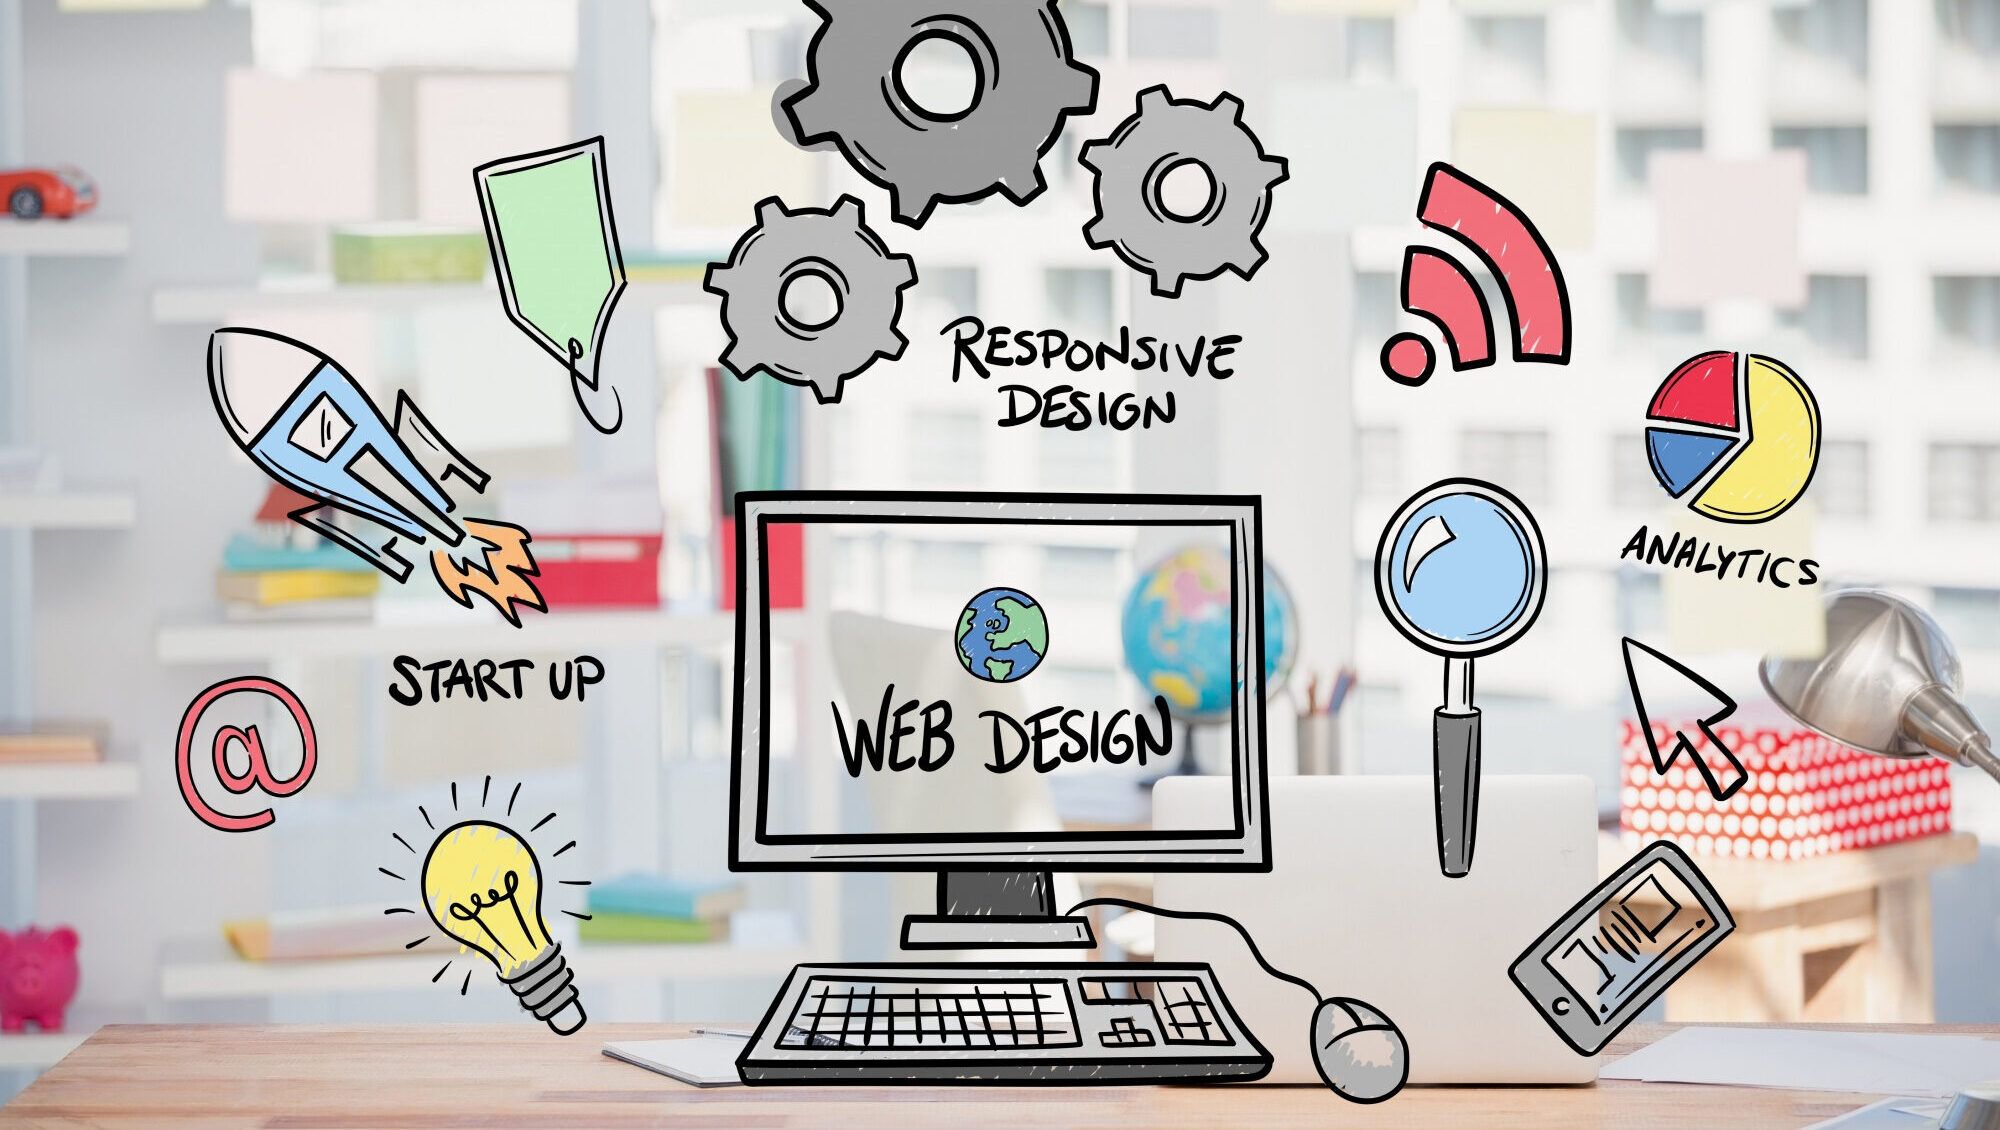 Come migliorare la conversione dei visitatori in clienti attraverso il web design?